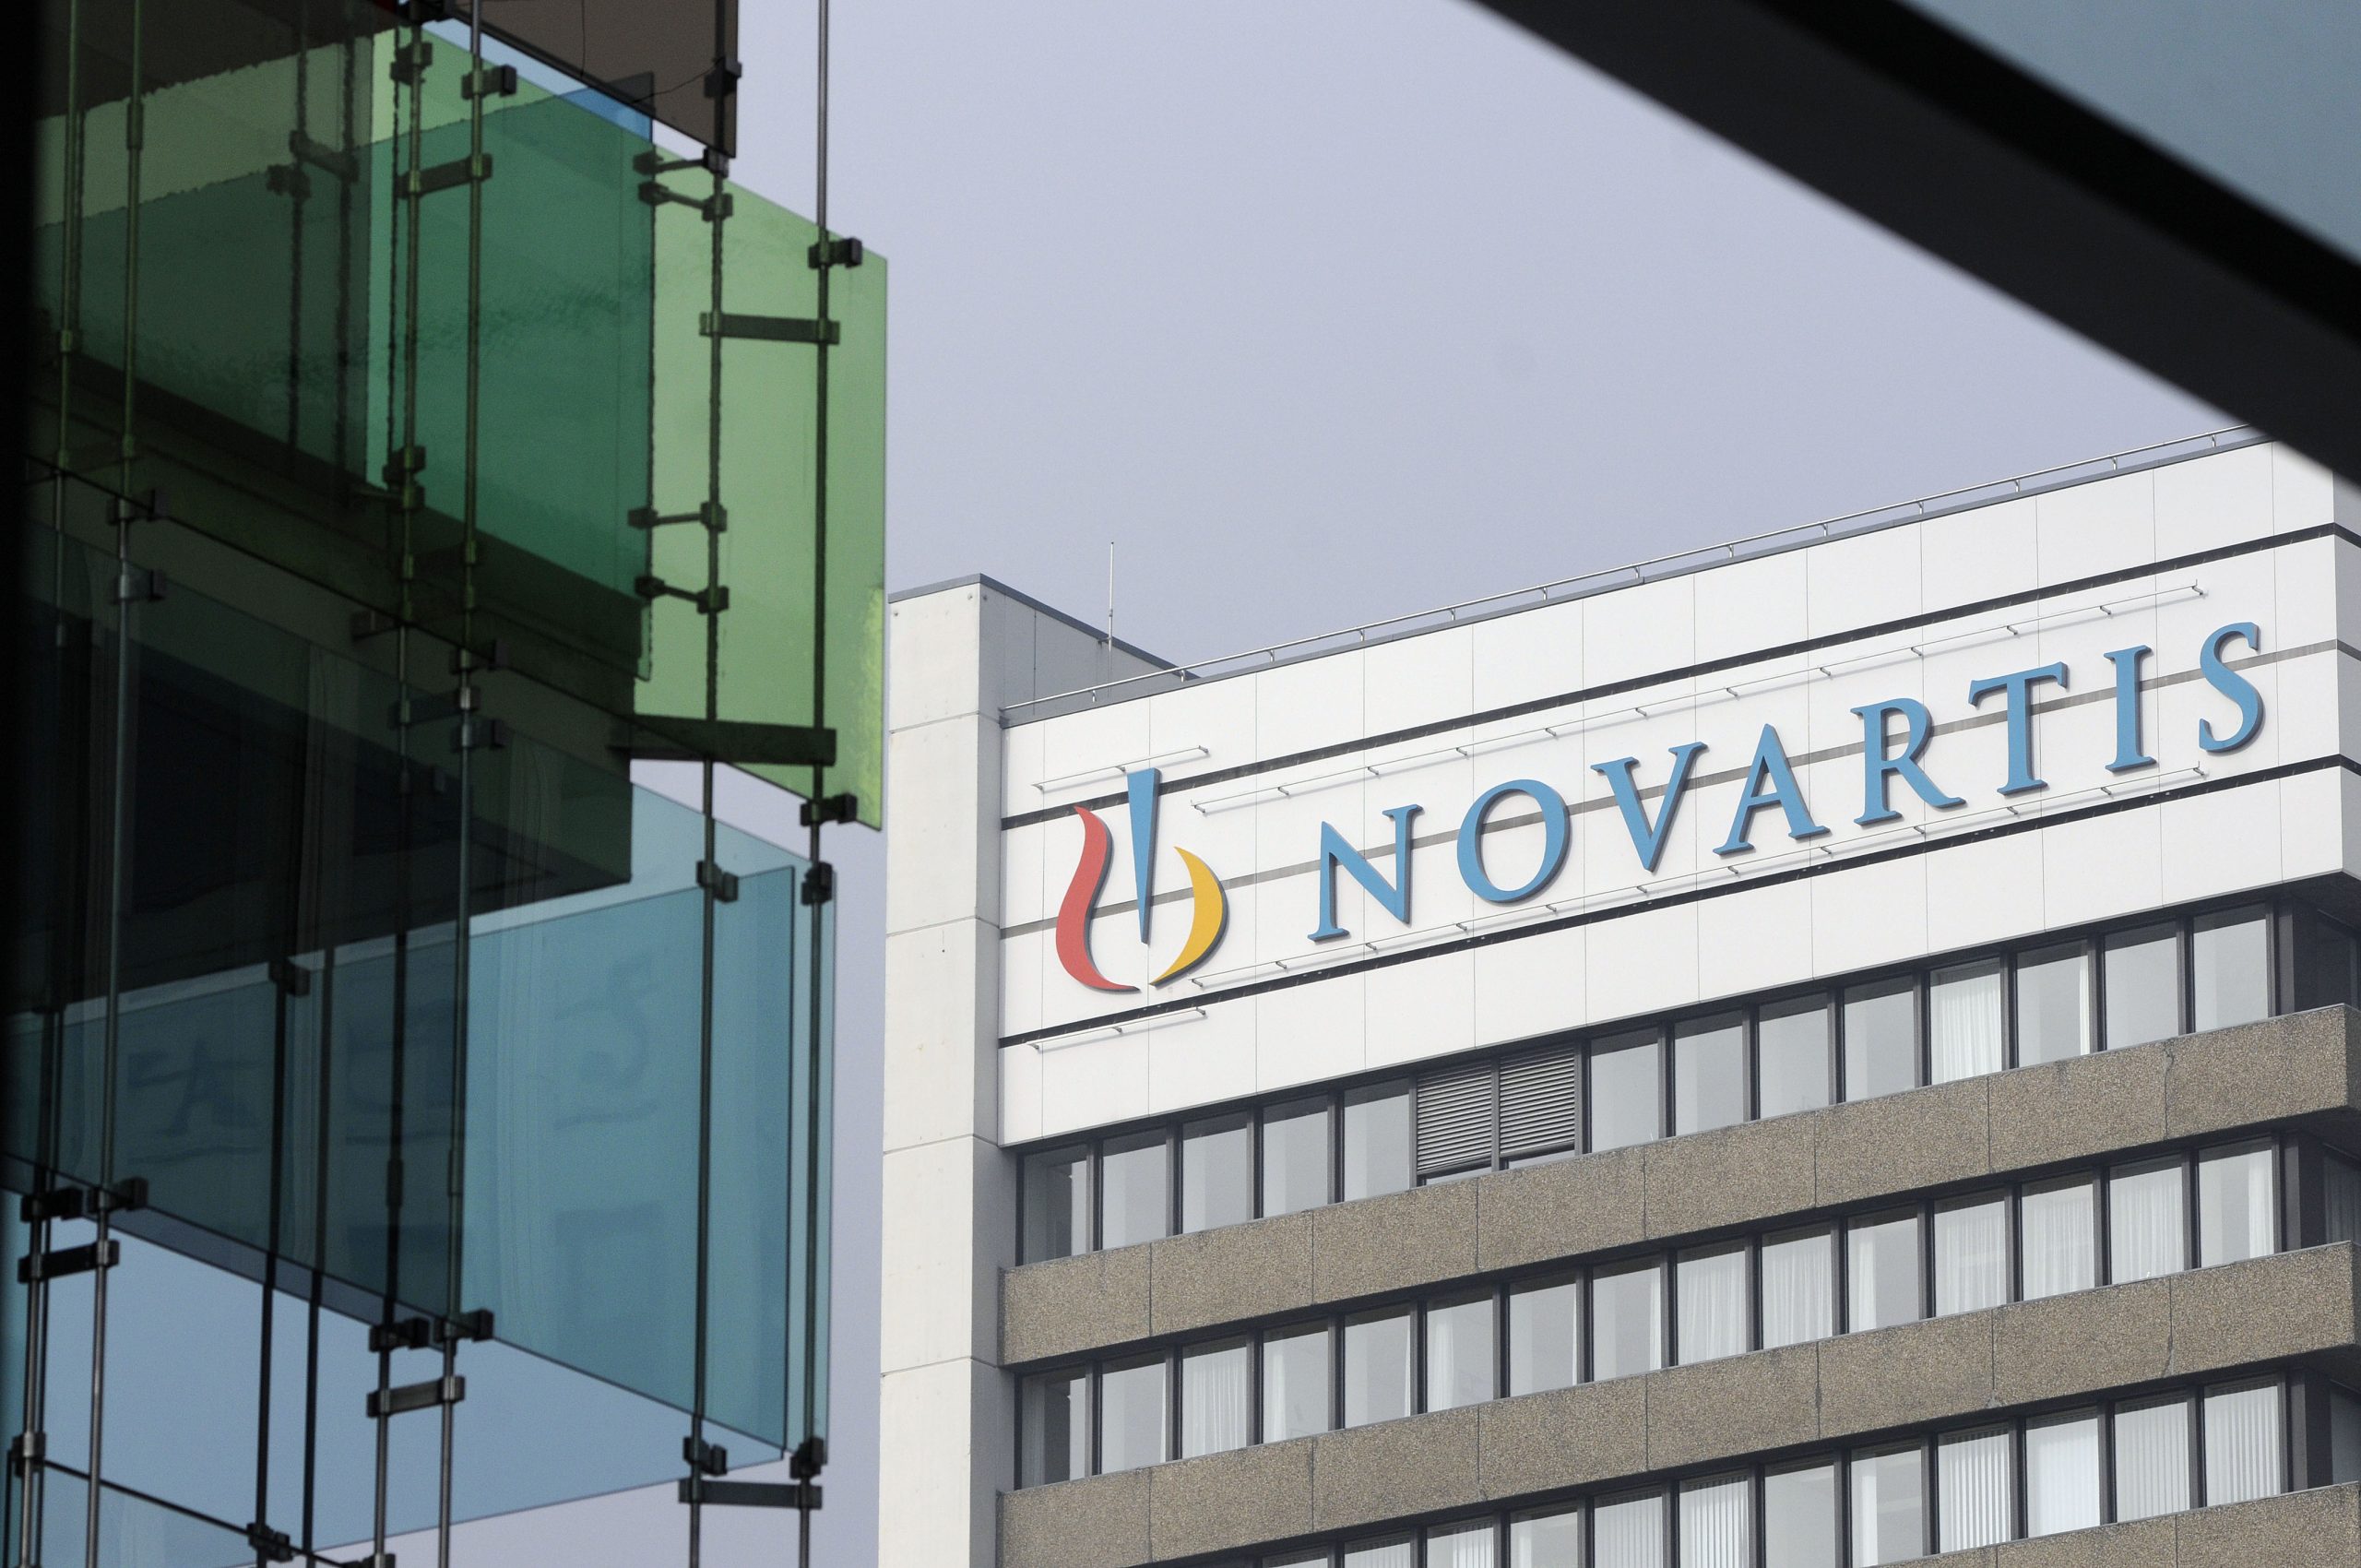 Υπάρχουν βίντεο και ηχογραφημένα μηνύματα για Novartis αλλά για ποιους;